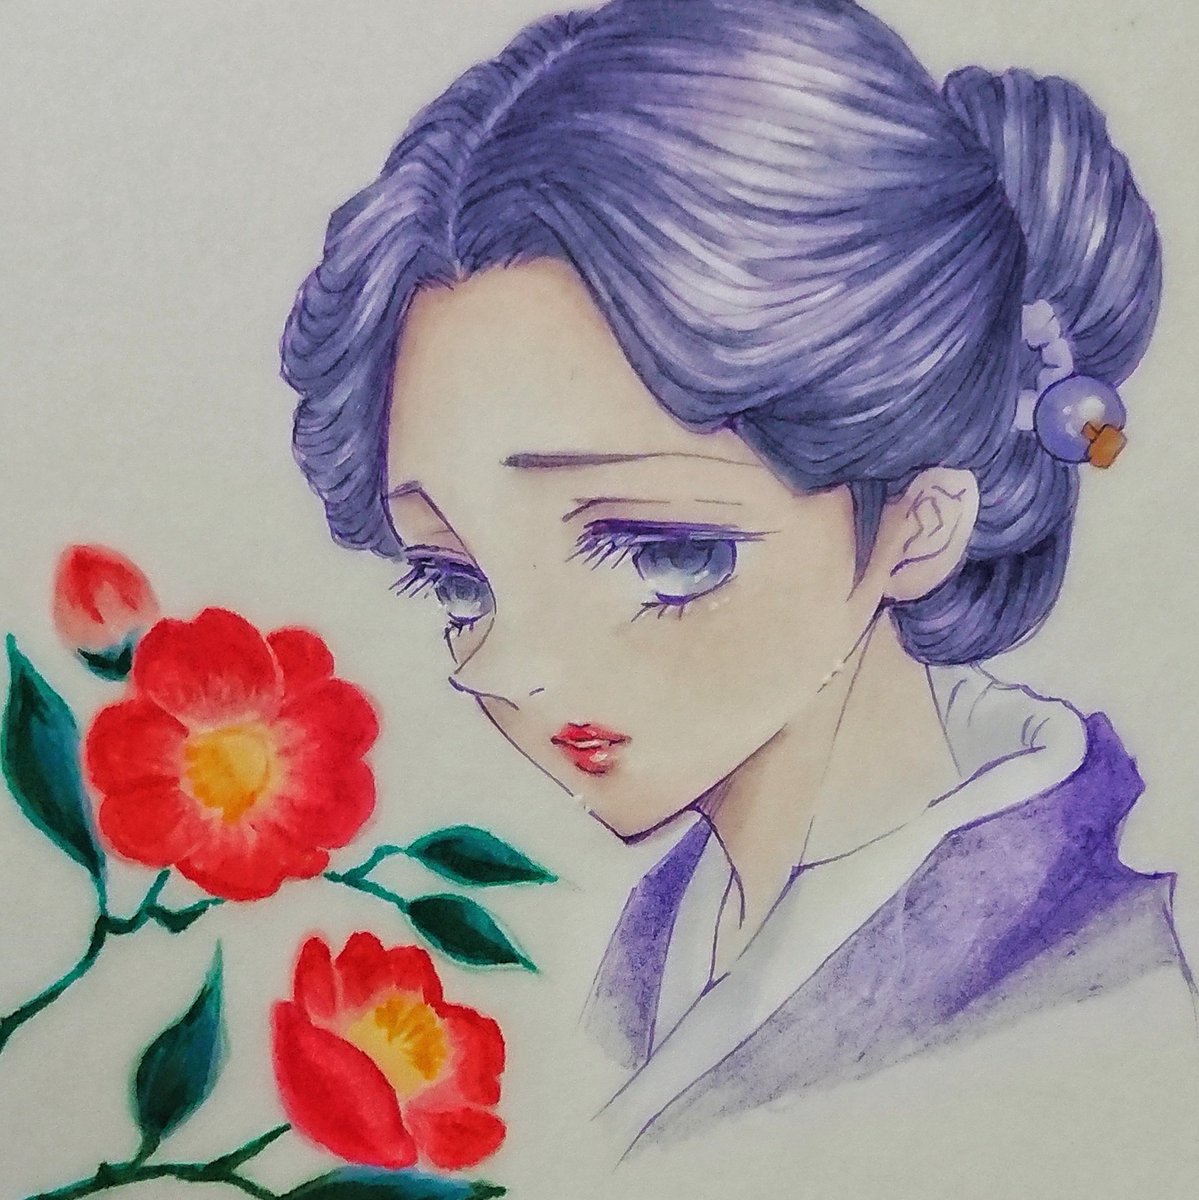 鬼滅の刃 珠代のイラストの描き方を伝授 和服美人の姿が大人気 Yuran Blog